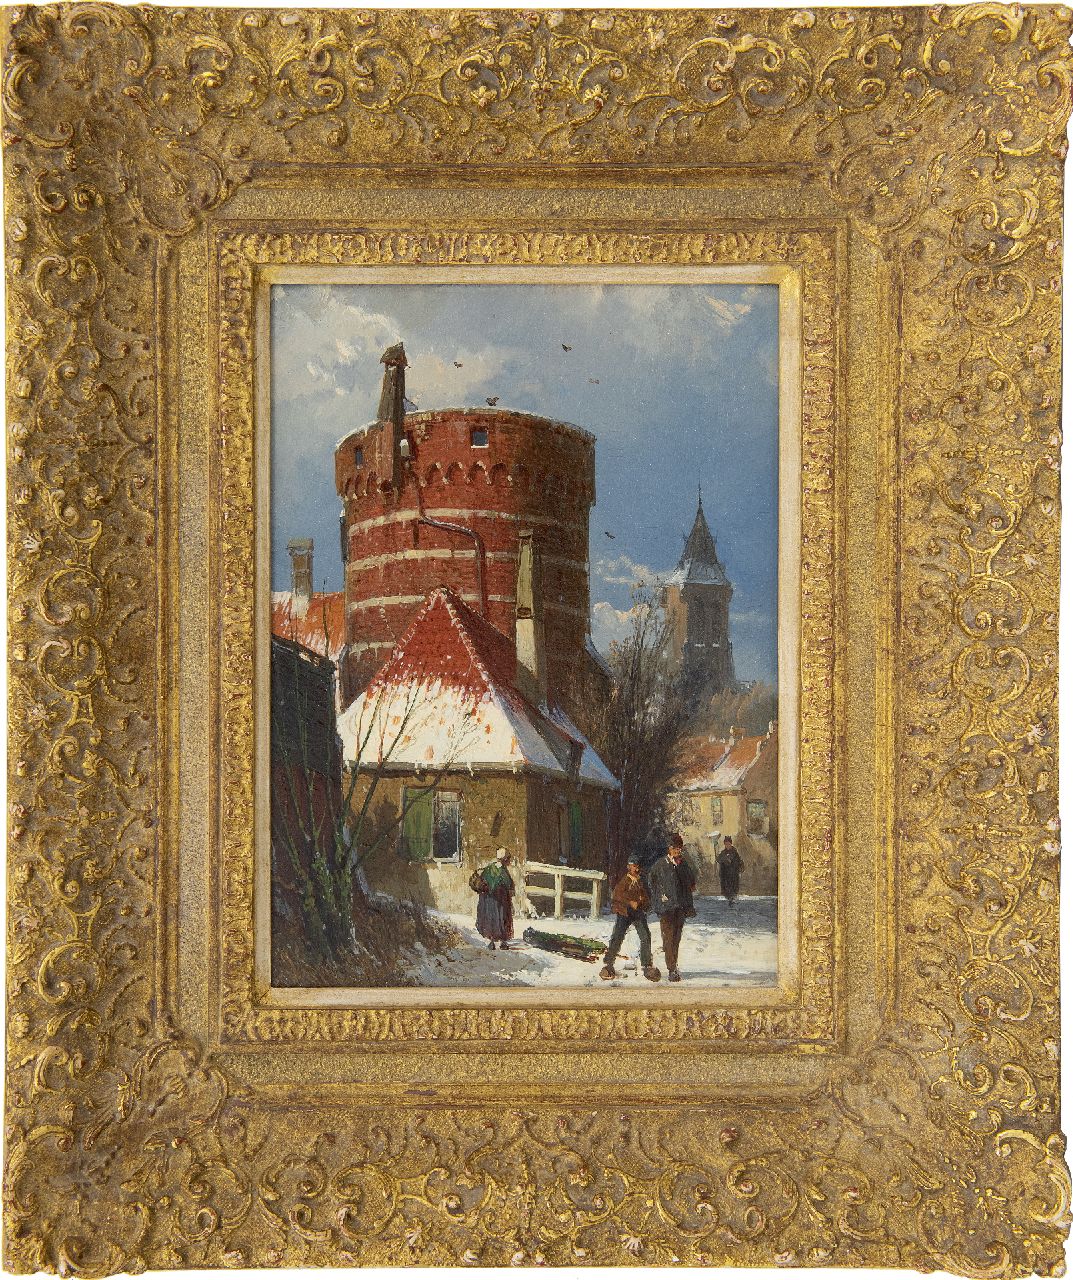 Koekkoek W.  | Willem Koekkoek | Schilderijen te koop aangeboden | Hollands straatje met een oude vestingtoren, in de sneeuw, olieverf op paneel 24,3 x 17,9 cm, te dateren 1862-1865